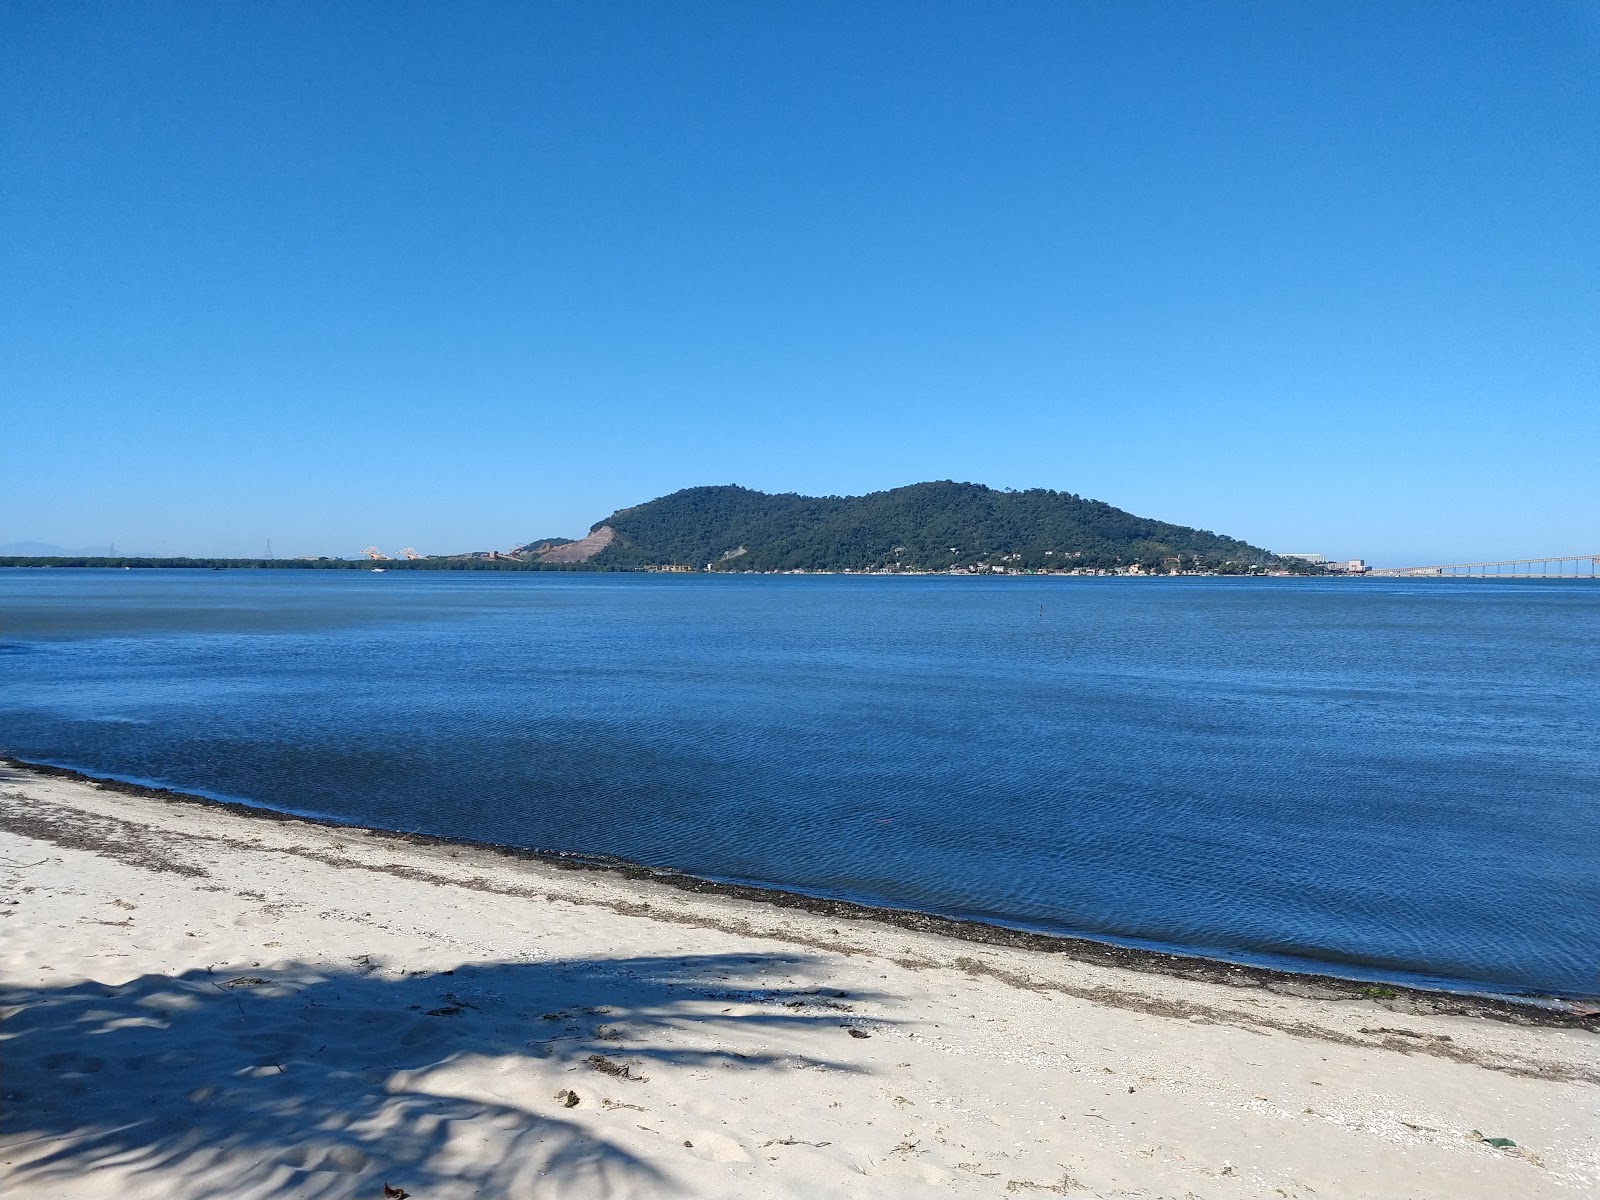 Foto af Praia de Coroa Grande - populært sted blandt afslapningskendere